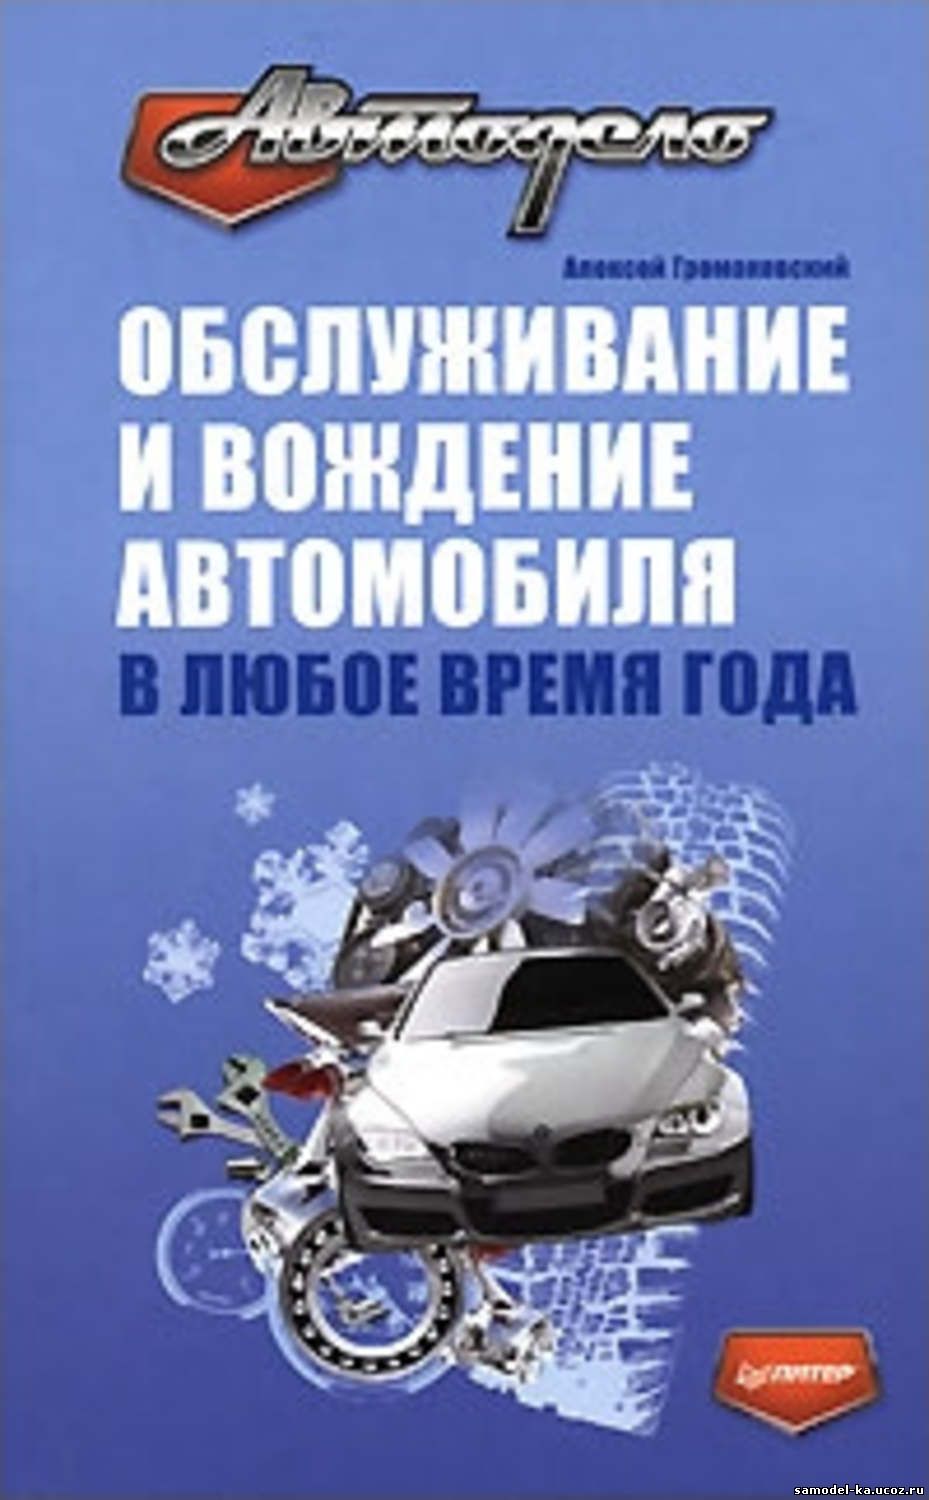 Обслуживание и вождение автомобиля в любое время года (2009) А. Громаковский